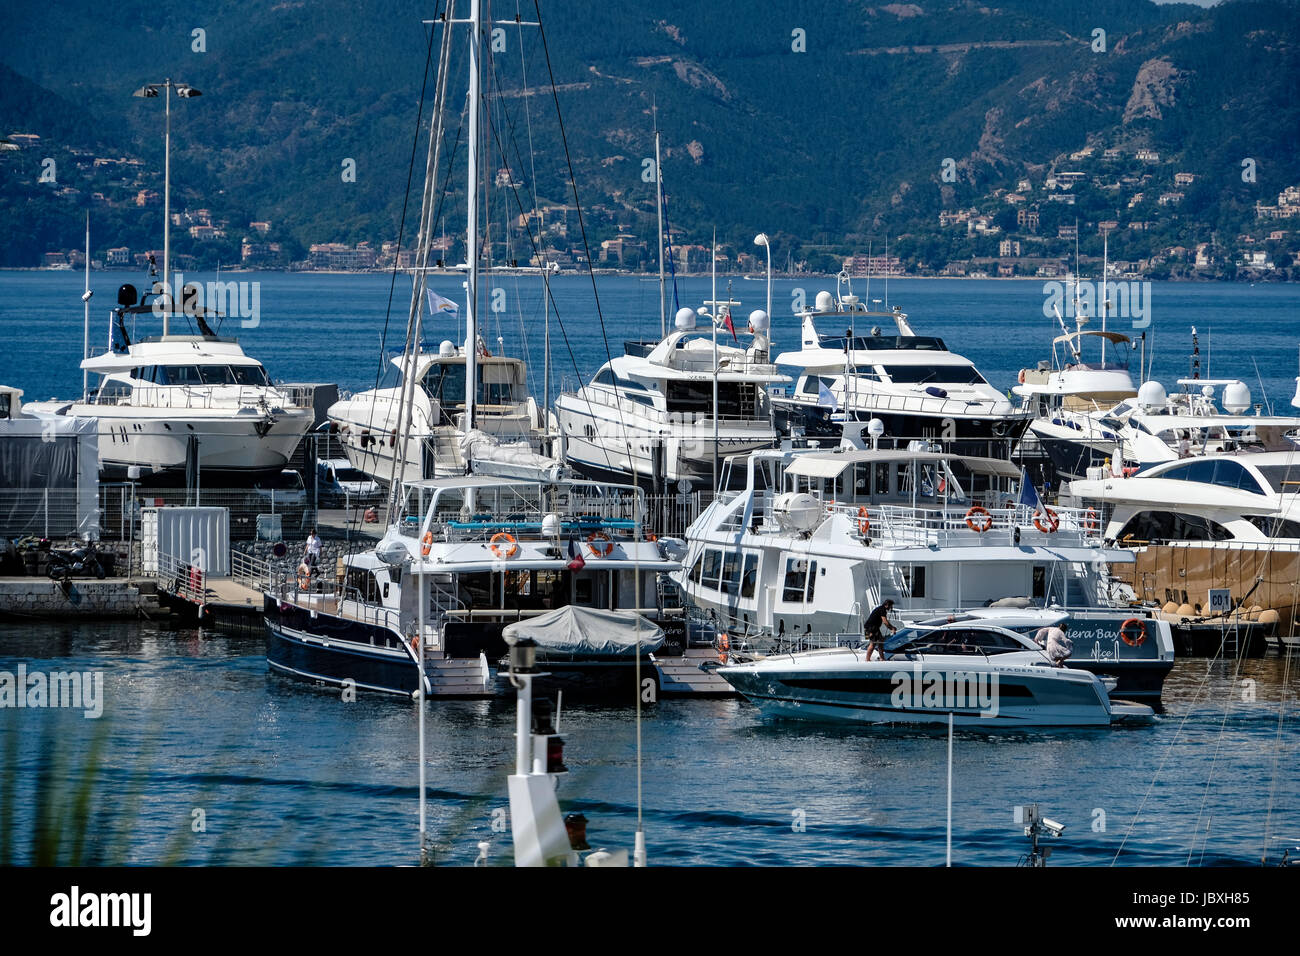 Il porto di Cannes durante il settantesimo Cannes Film Festival presso il Palais des Festivals. Cannes, Francia - Giovedì 18 Maggio, 2017. Foto Stock